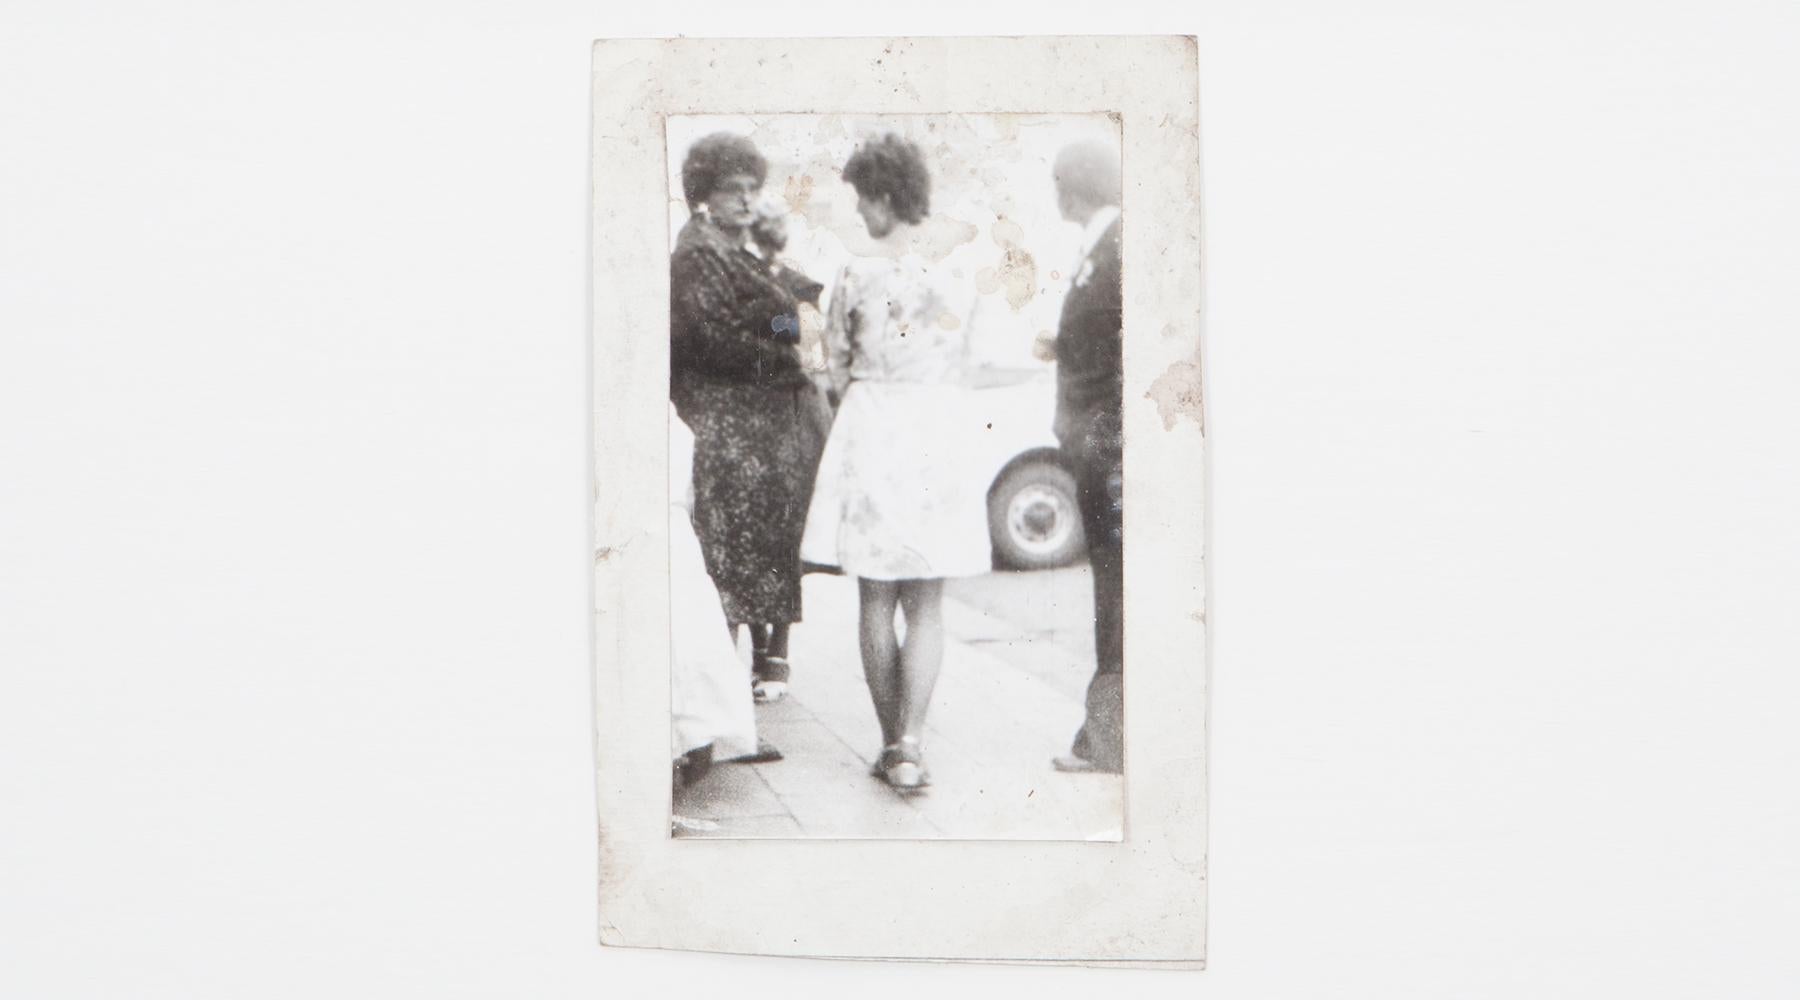 Original Miroslav Tichý s/w Fotografie von 1970. Einzigartiger Vintage-Gelatinesilberdruck. Inklusive schwarzem Holzrahmen in H 35,5 / B 26,5 cm. Das Bild zeigt eine Straßenszene, in deren Mittelpunkt zwei Frauen stehen.

Miroslav Tichý war ein